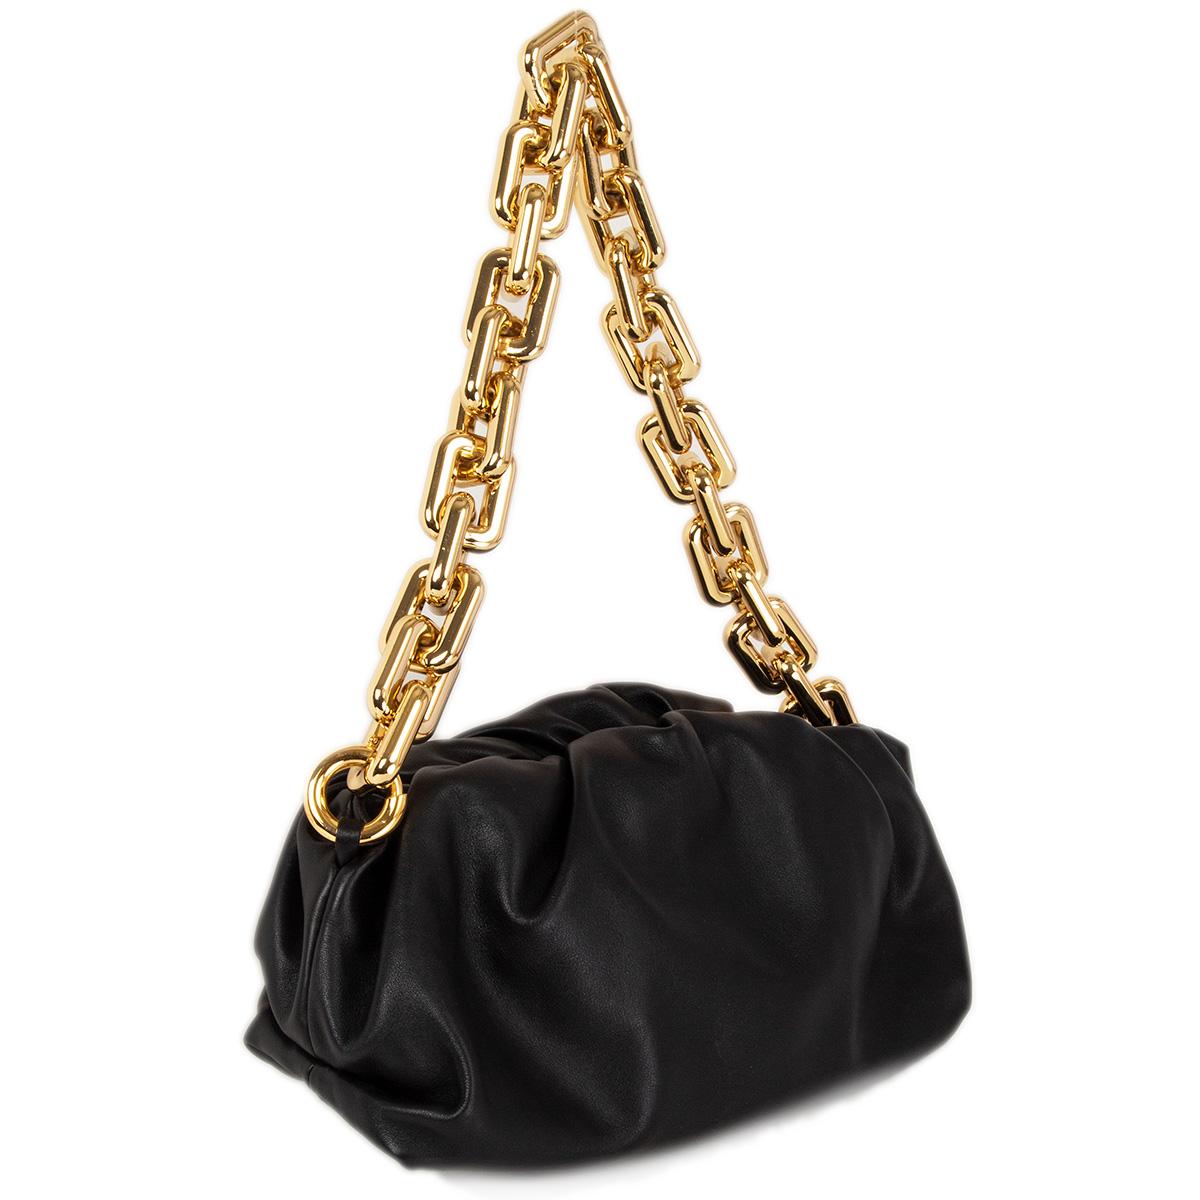 100% authentische Bottega Veneta Chain Pouch Tasche aus geschmeidigem schwarzem Kalbsleder mit einem klobigen goldenen Kettengriff. Sie wird mit einem Magnetverschluss geöffnet und ist mit schwarzem Leder gefüttert. Wurde ein- oder zweimal getragen